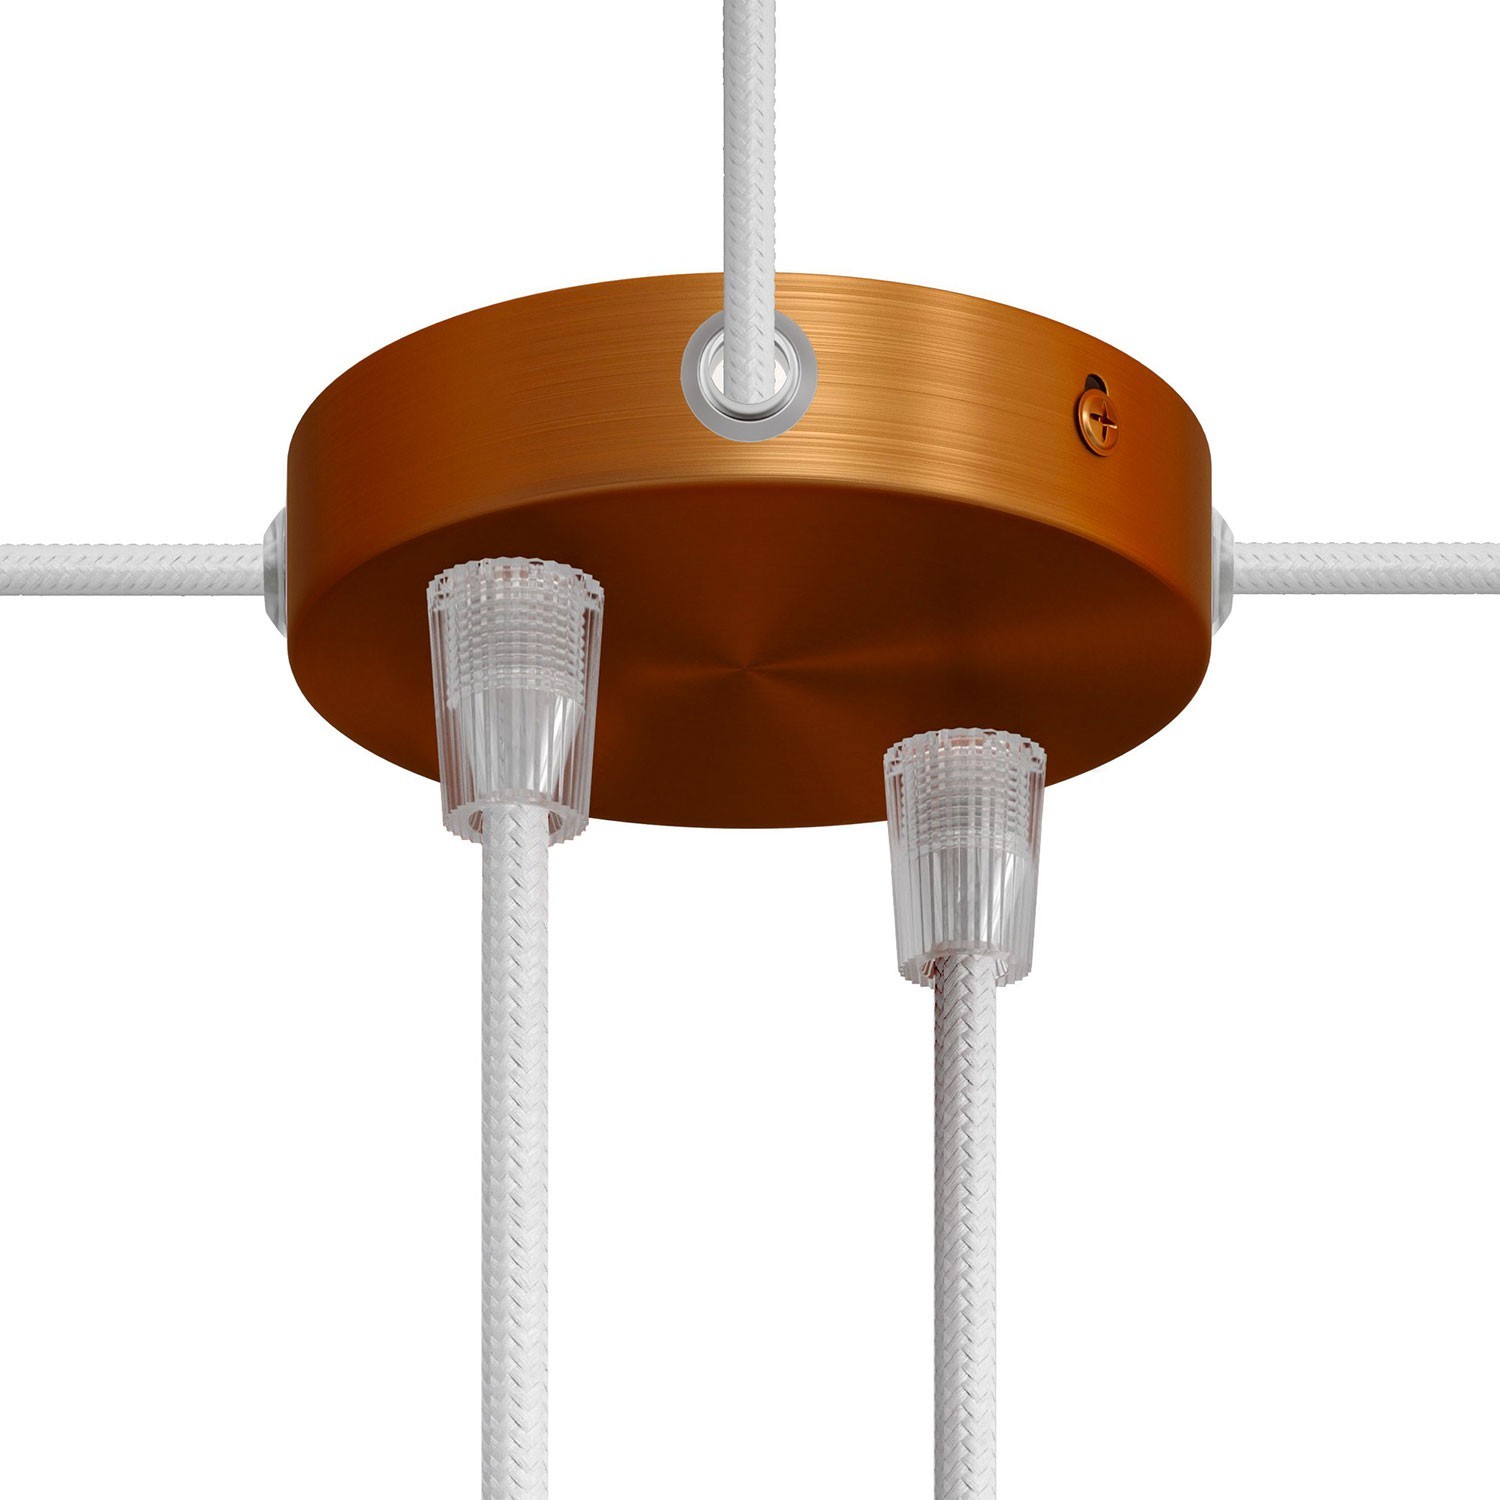 Kit mini cylindrisk takkopp i metall med 2 centrala hål och 4 sidohål